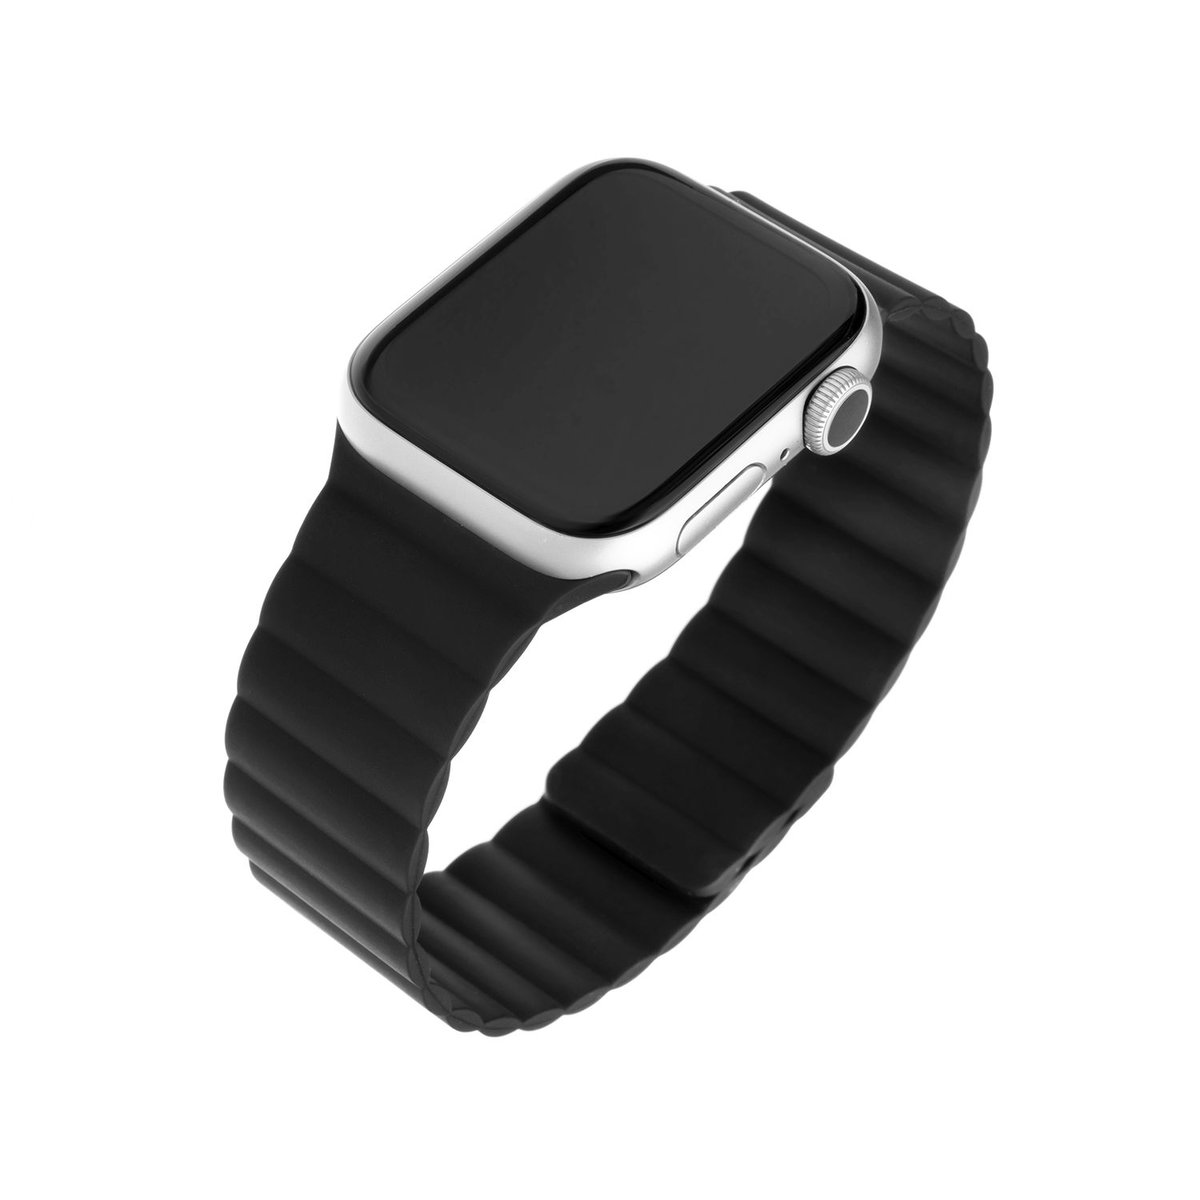 FIXED Magnetic Strap do Apple Watch black - darmowy odbiór w 22 miastach i bezpłatny zwrot Paczkomatem aż do 15 dni